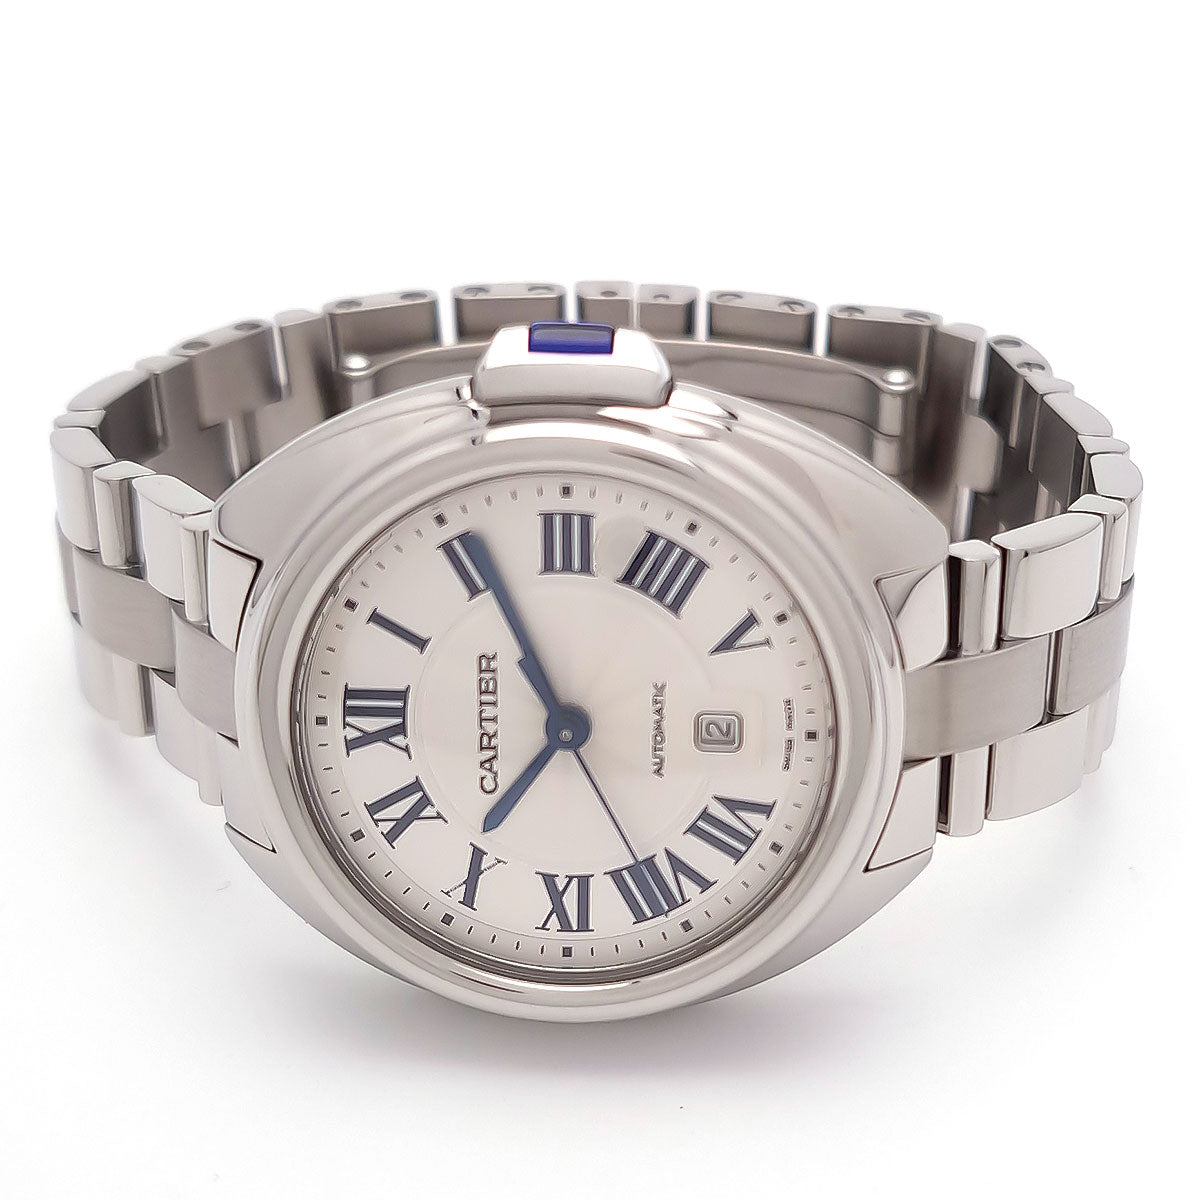 Automatic Clé de Cartier Wrist Watch WSCL0005